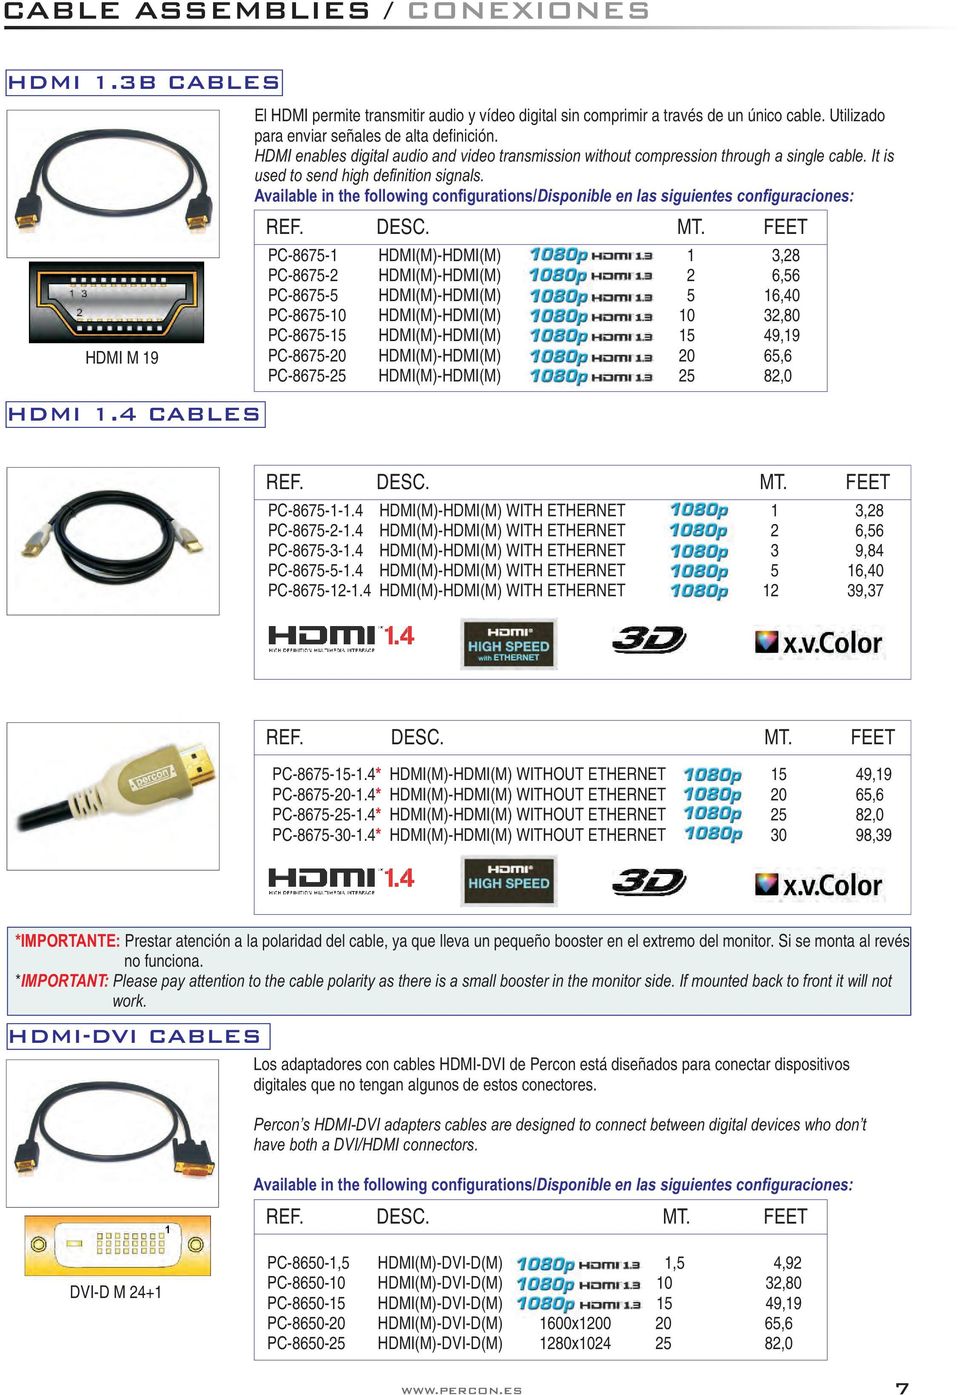 Available in the following configurations/disponible en las siguientes configuraciones: PC-8675-1 HDMI(M)-HDMI(M) 1 3,28 PC-8675-2 HDMI(M)-HDMI(M) 2 6,56 PC-8675-5 HDMI(M)-HDMI(M) 5 16,40 PC-8675-10